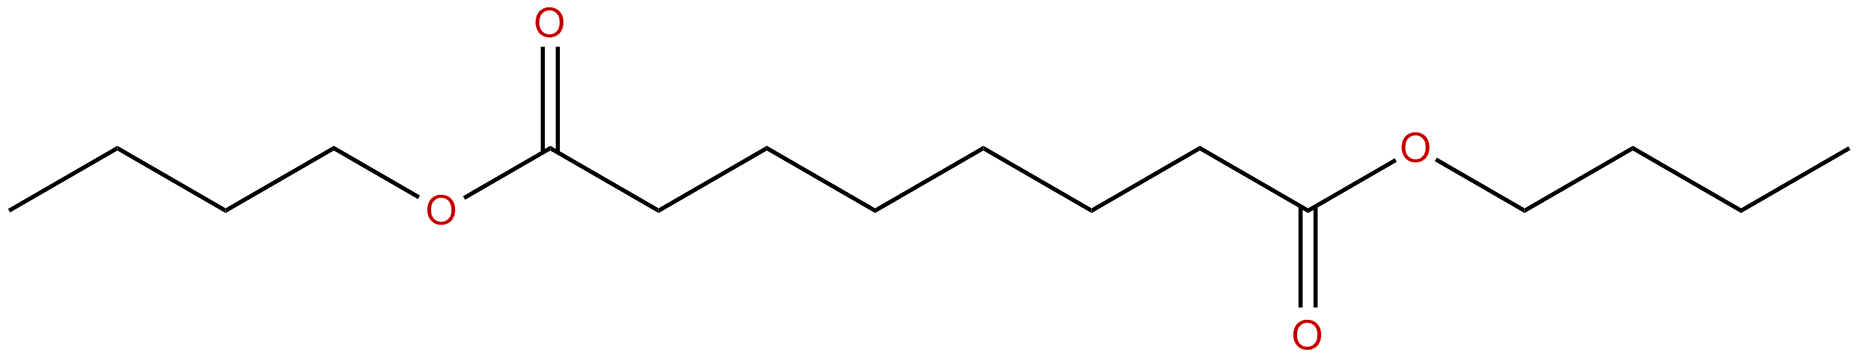 Image of dibutyl octanedioate